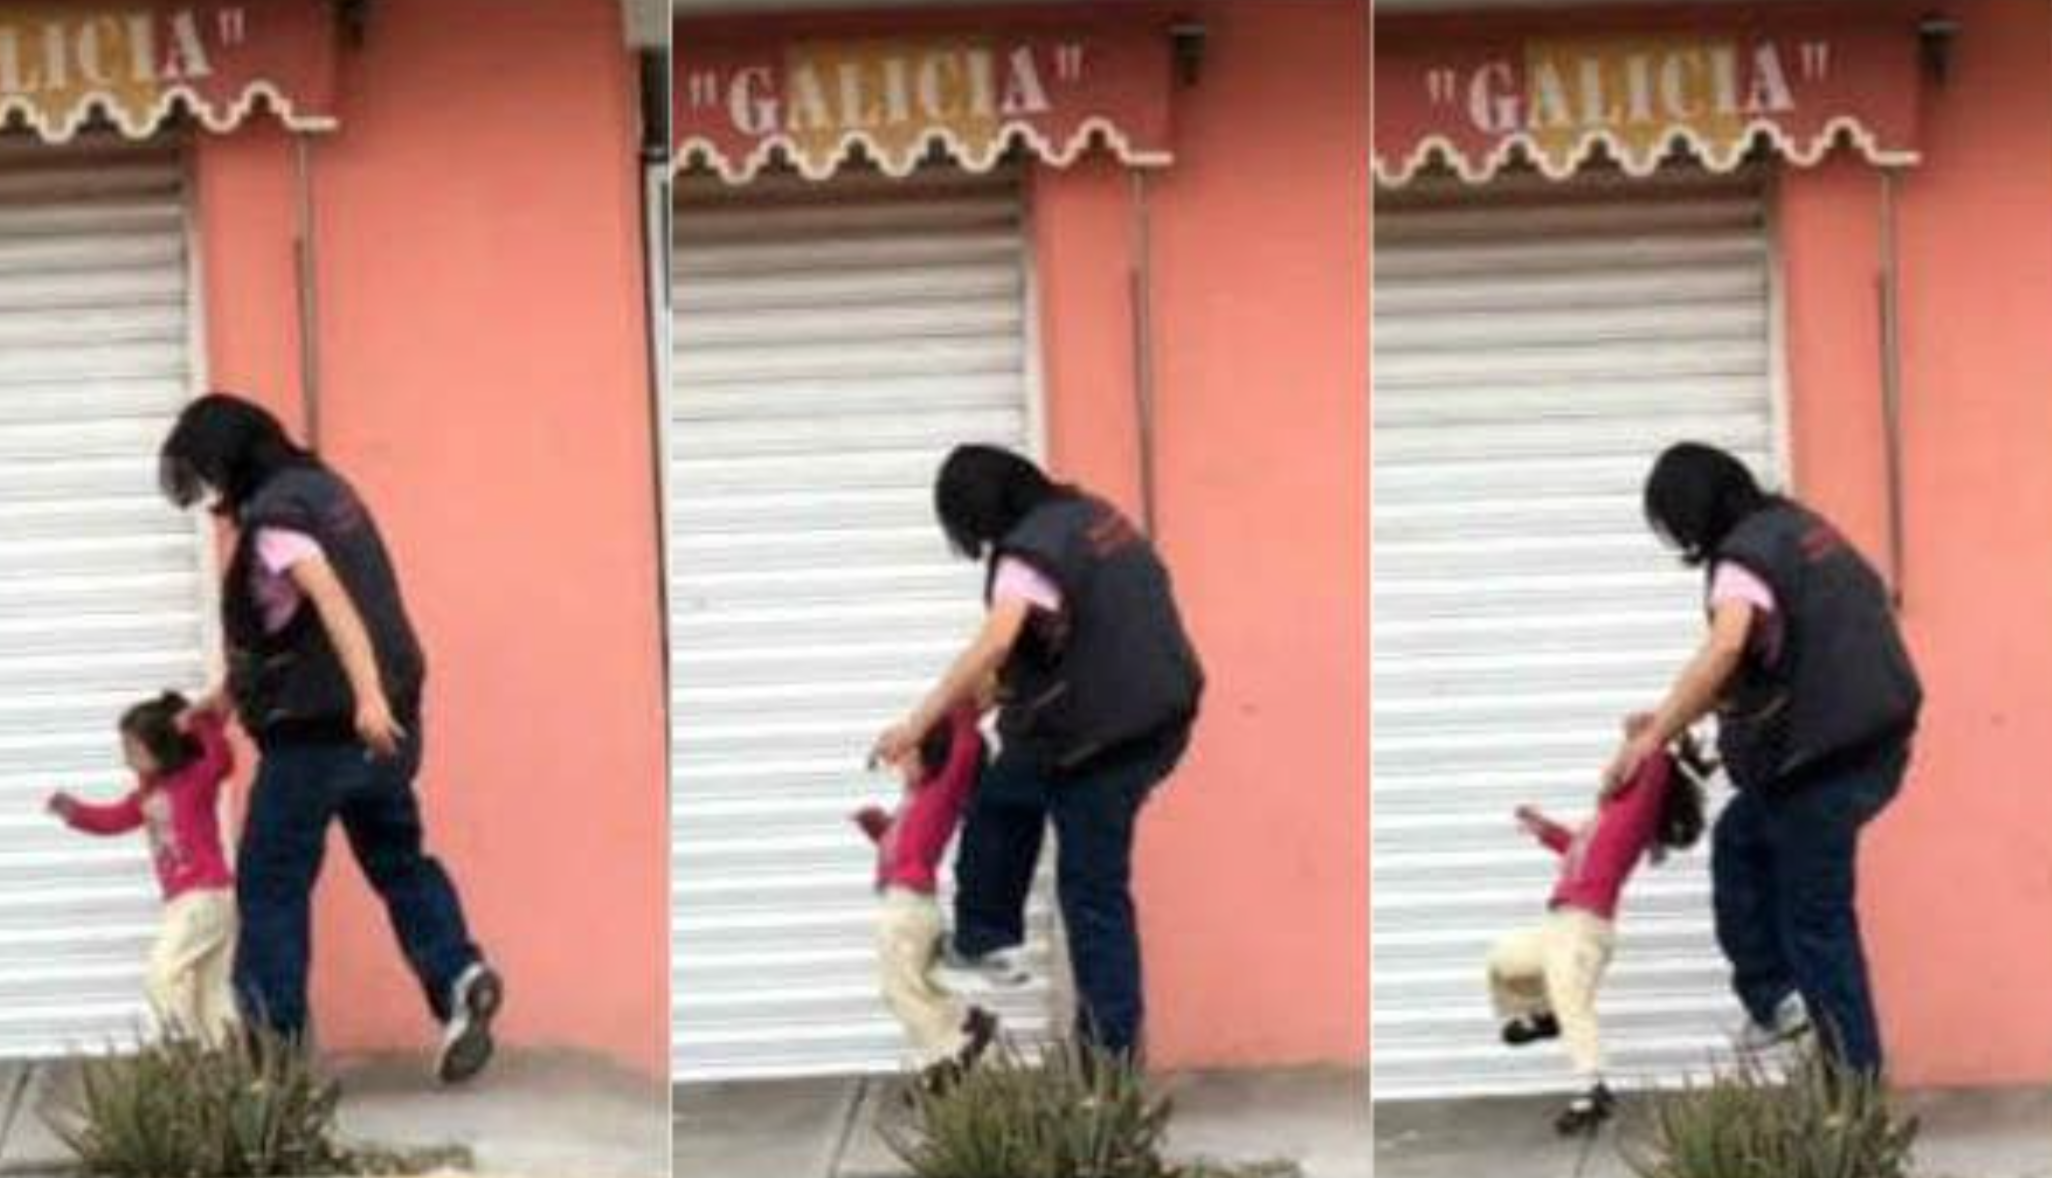  (Video) Mujer insulta y golpea a menor en la calle